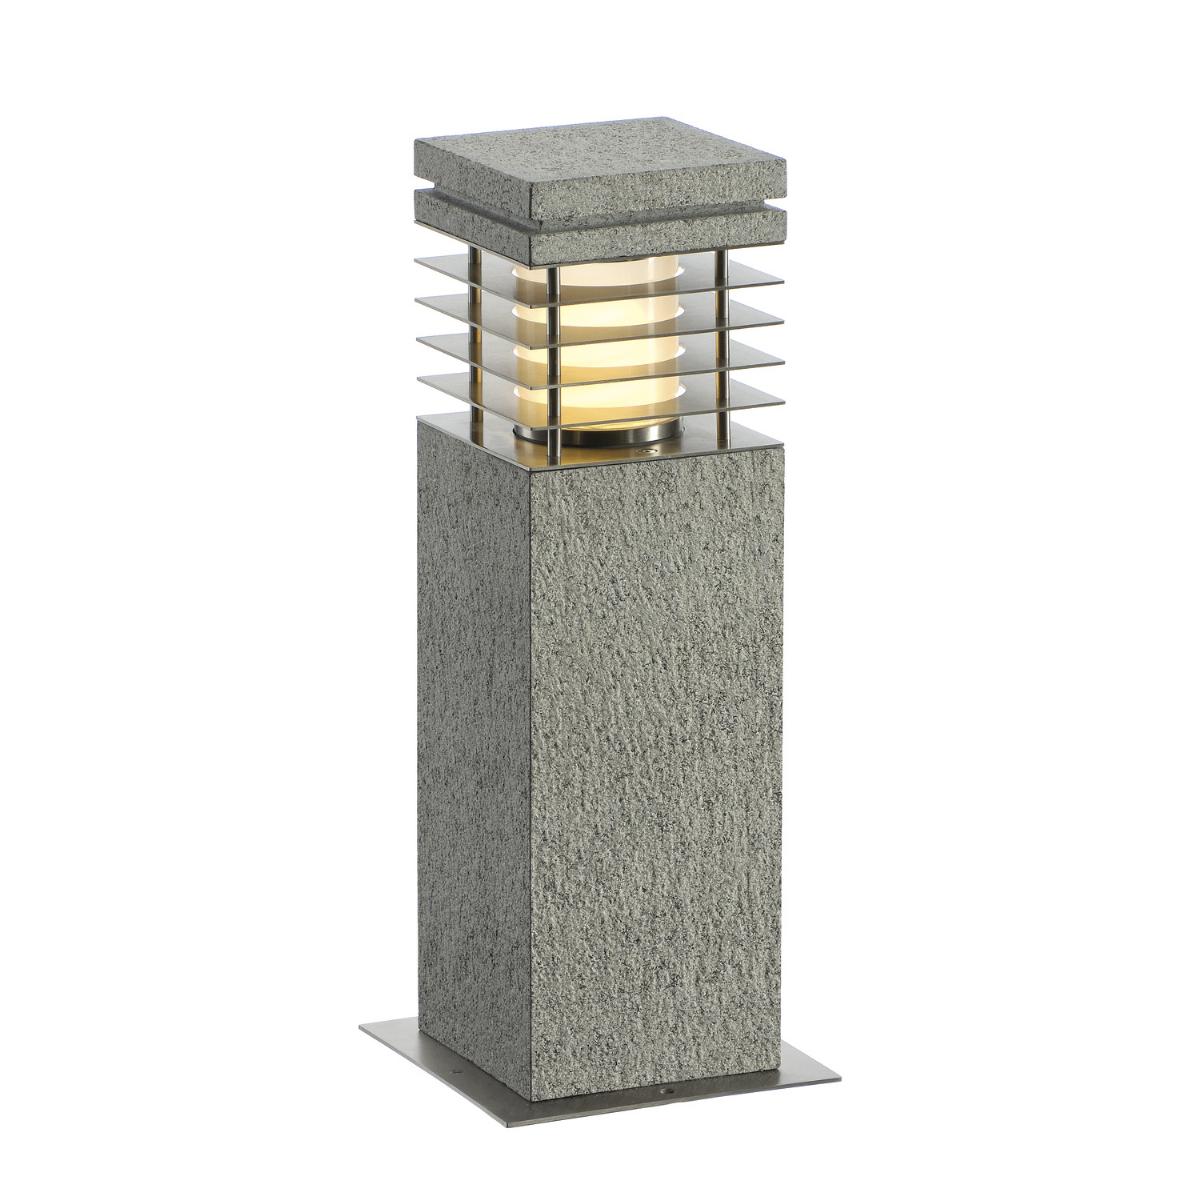 ARROCK GRANITE, lampa podłogowa outdoor, TC-(D,H,T,Q)SE, IP44, kwadratowa, salt & pepper, granit, D/S/W 12/12/40 cm, maks. 15W